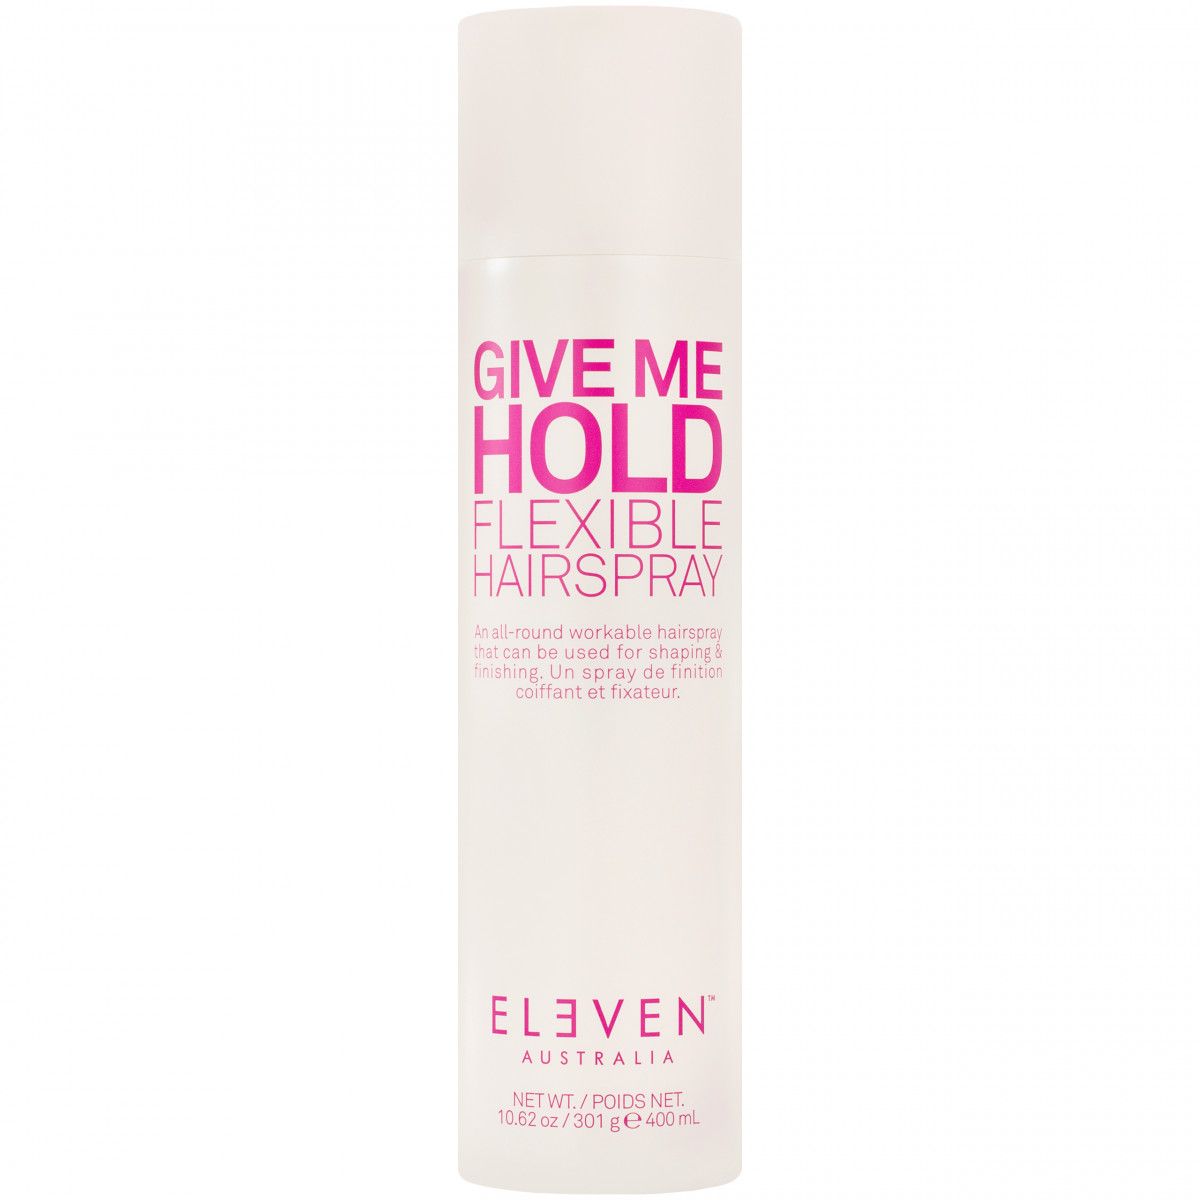 Eleven Australia Give Me Hold Flexible Hairspray - elastyczny lakier do włosów, 400ml